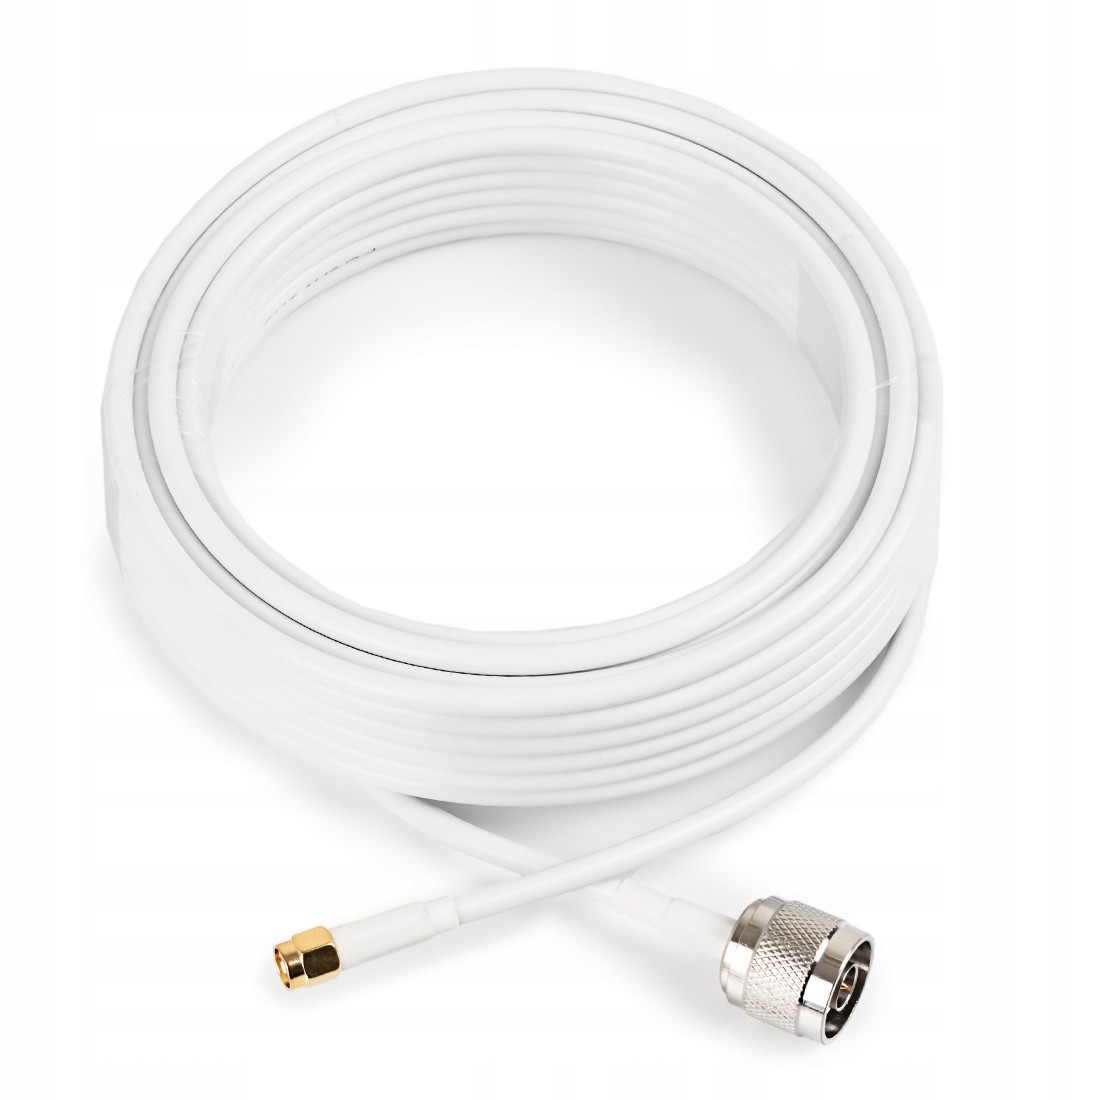 Gsm Poynting kabel CAB-150 HDF195 N Sma 10m